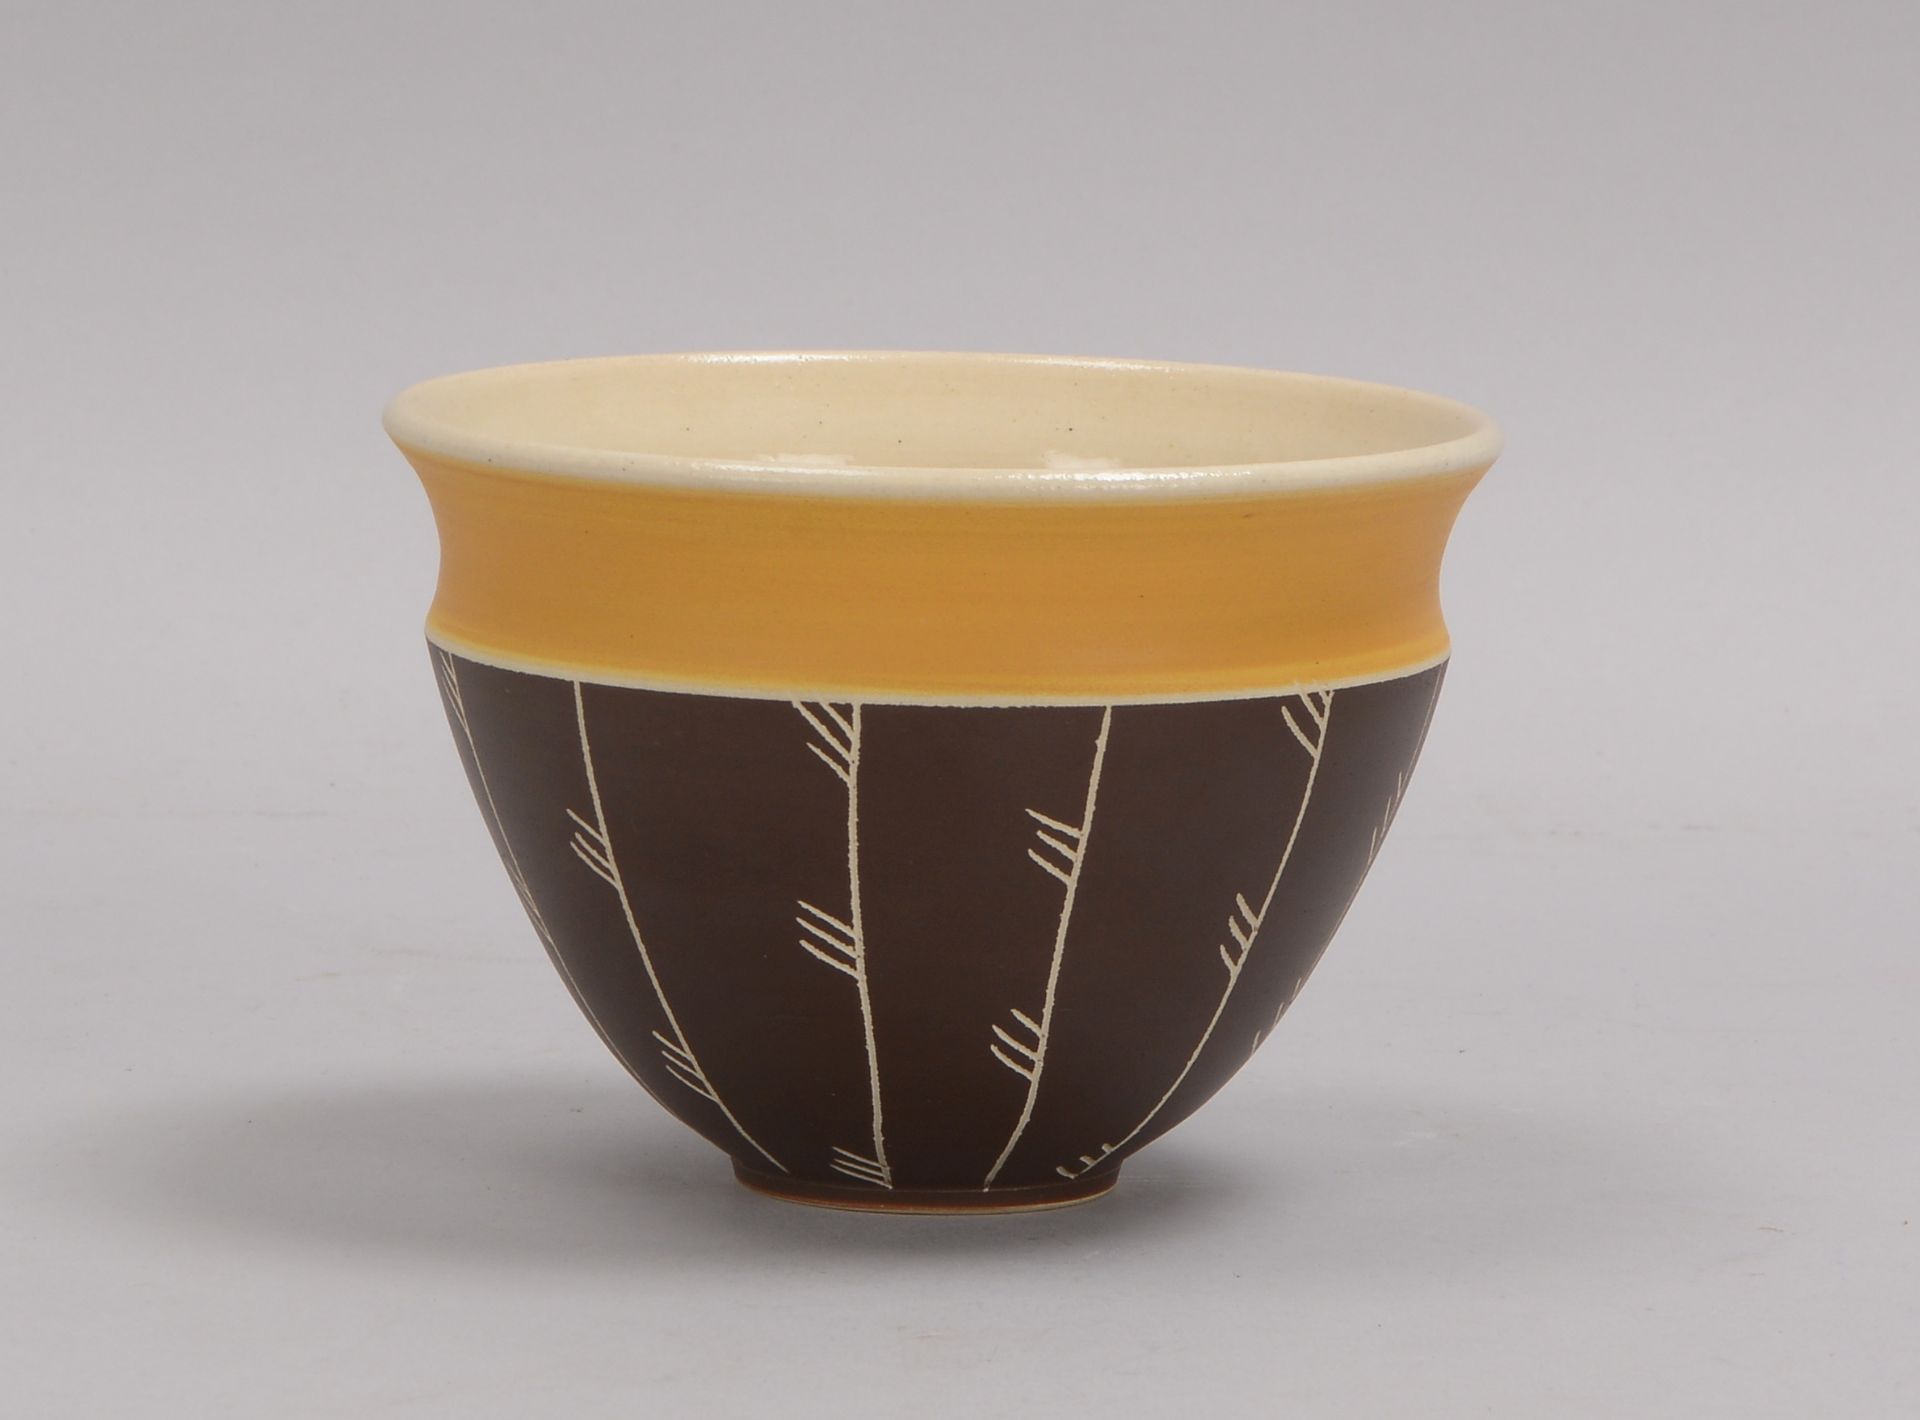 K&uuml;nstler-Keramikvase, Bechervase, heller Scherben mit Glasur in Beige, Wandung polychromiert